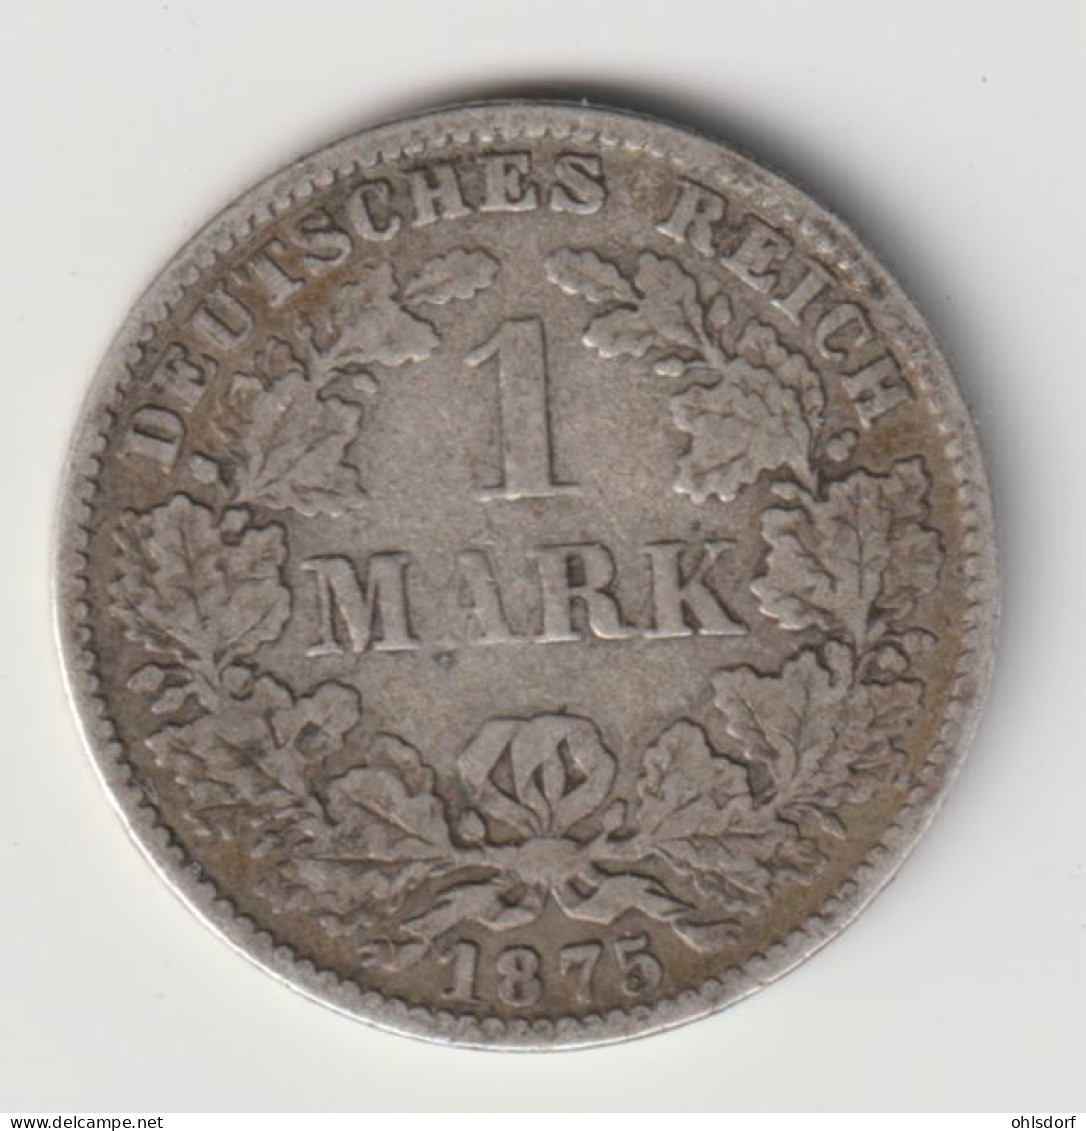 DEUTSCHES REICH 1875 C: 1 Mark, Silver, KM 7 - 1 Mark